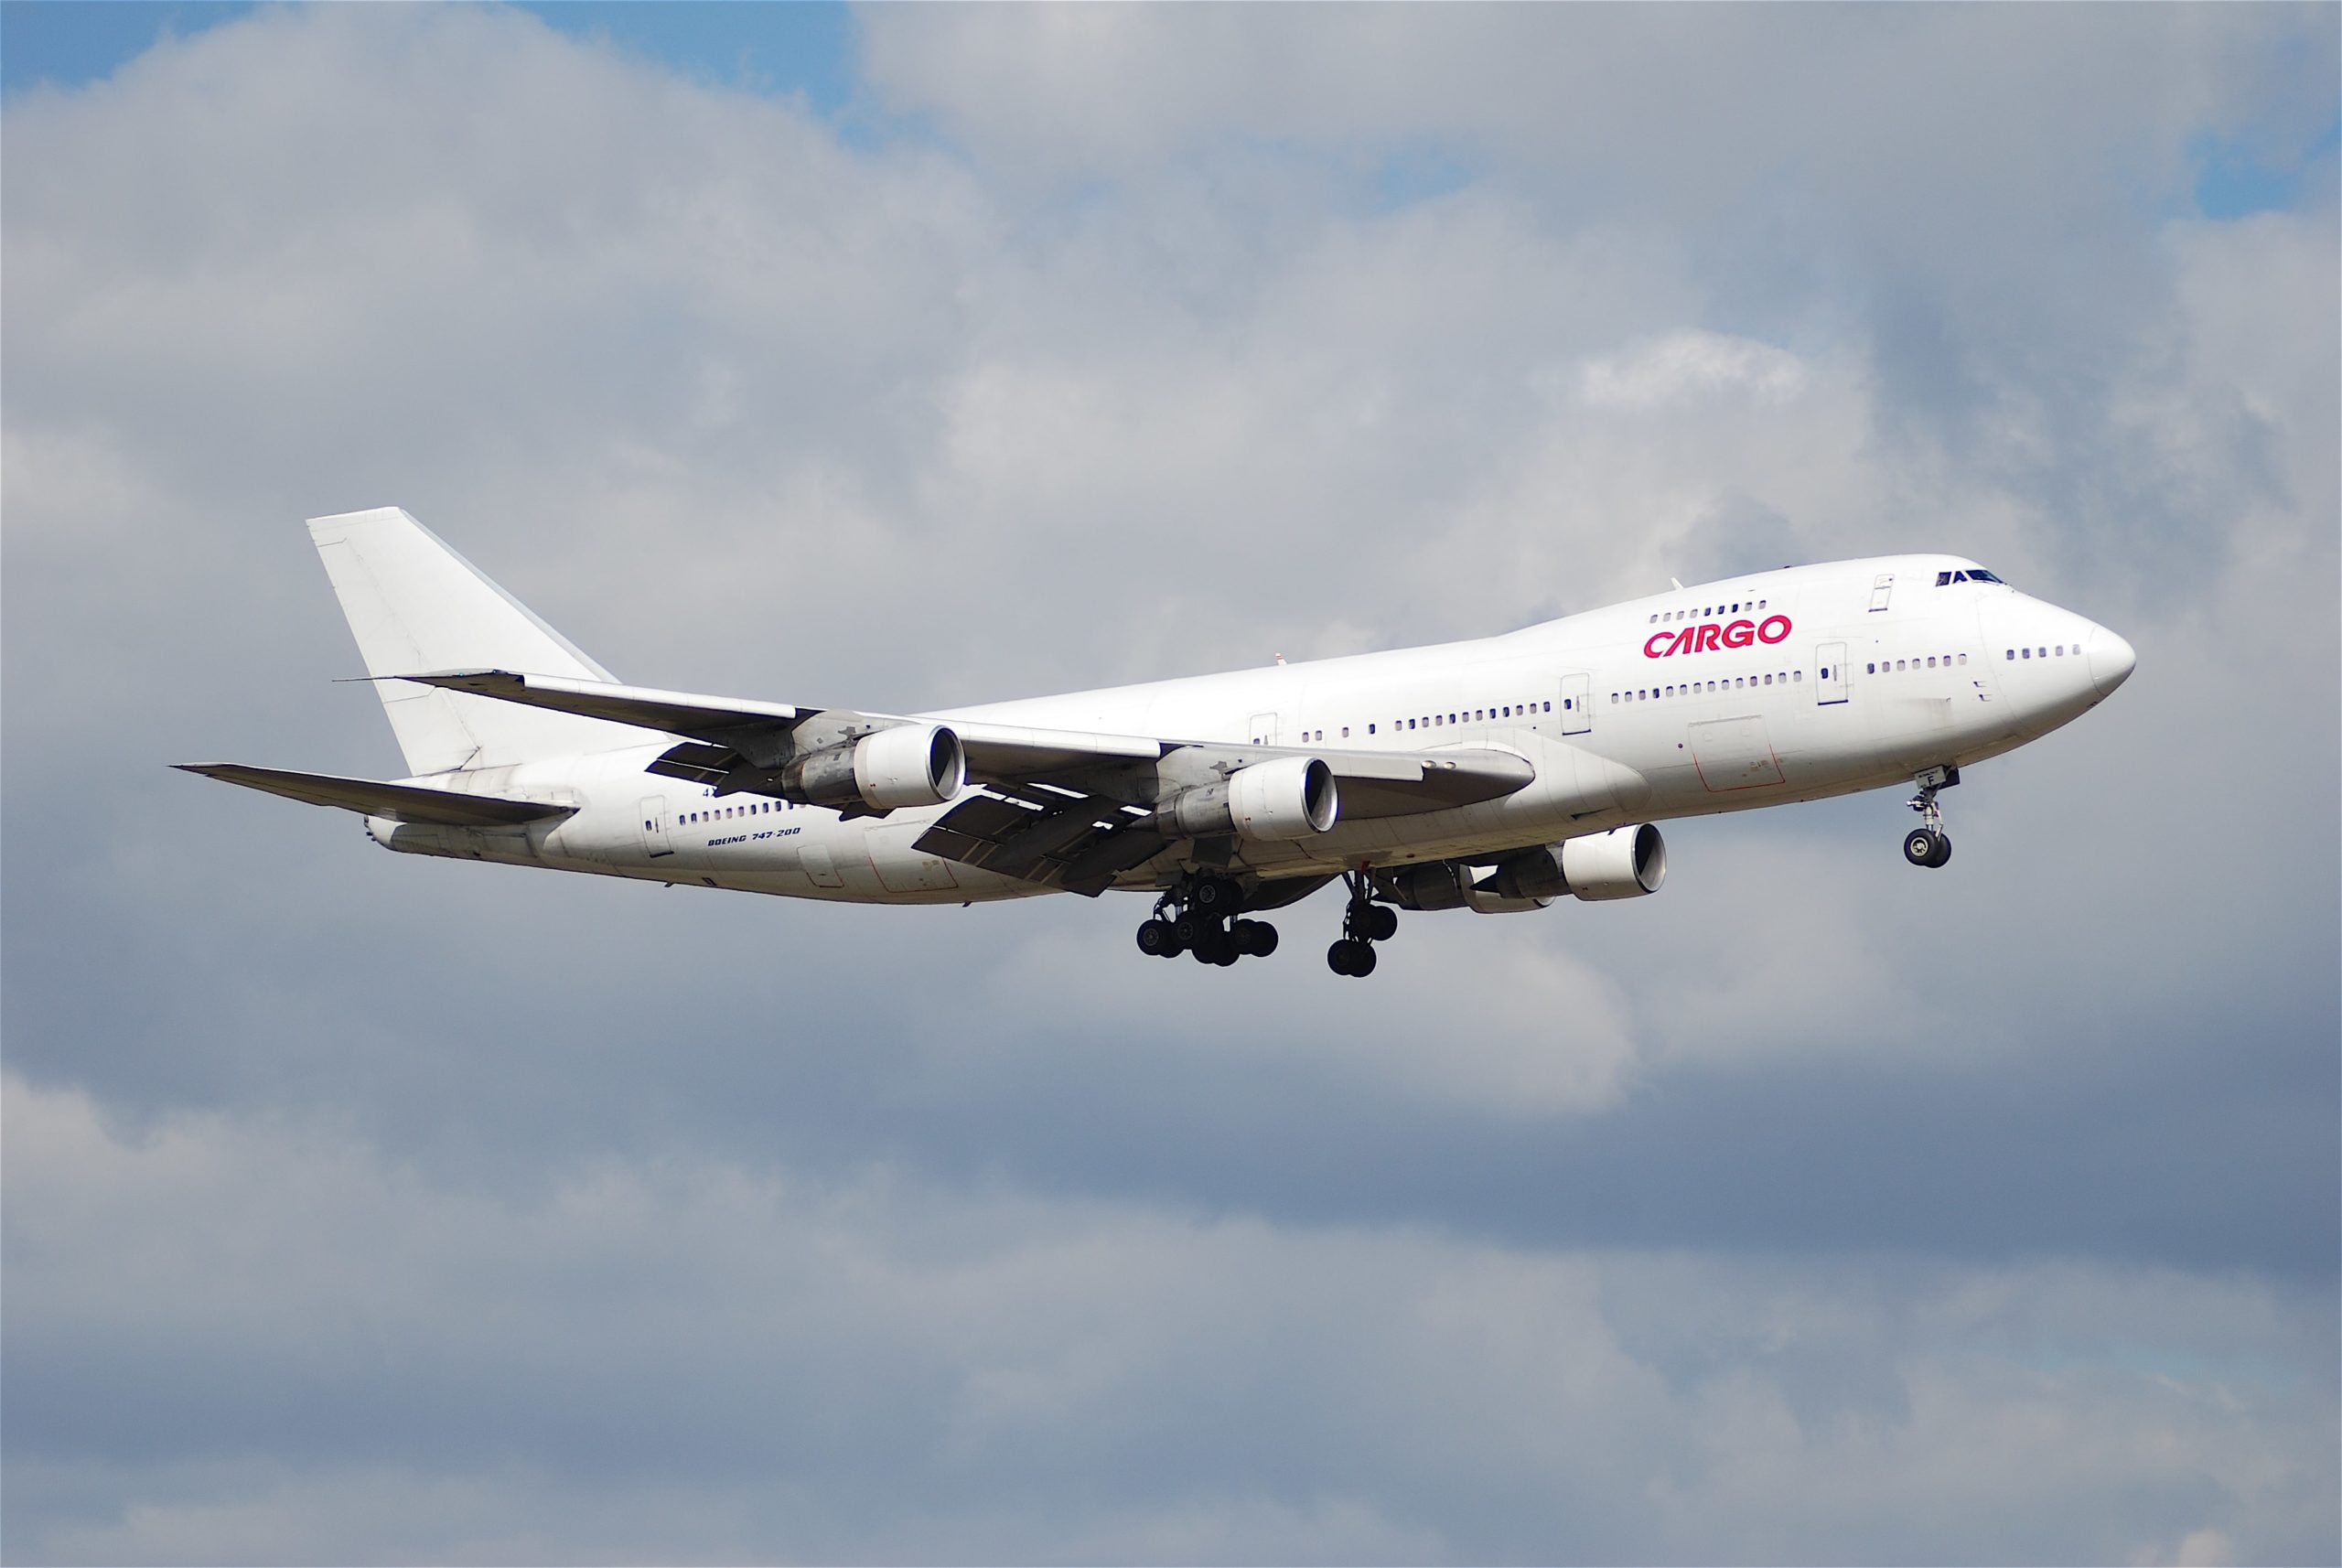 Le Boeing 747-200F dédié au transport de colis